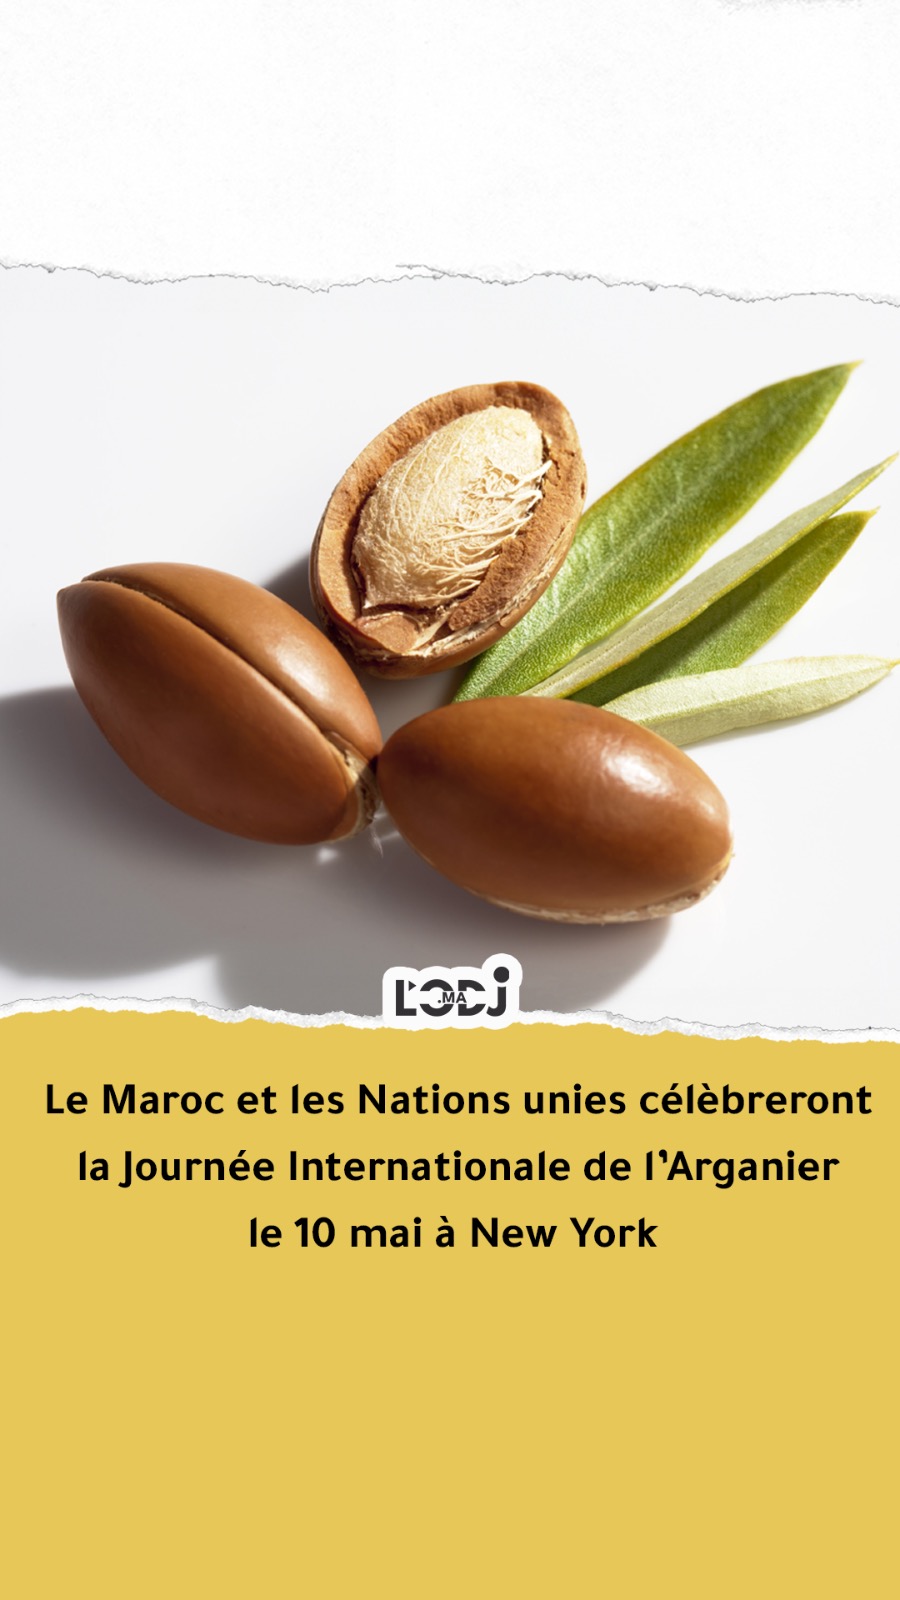 Le Maroc et les Nations unies célèbreront la Journée Internationale de l’Arganier le 10 mai à New York